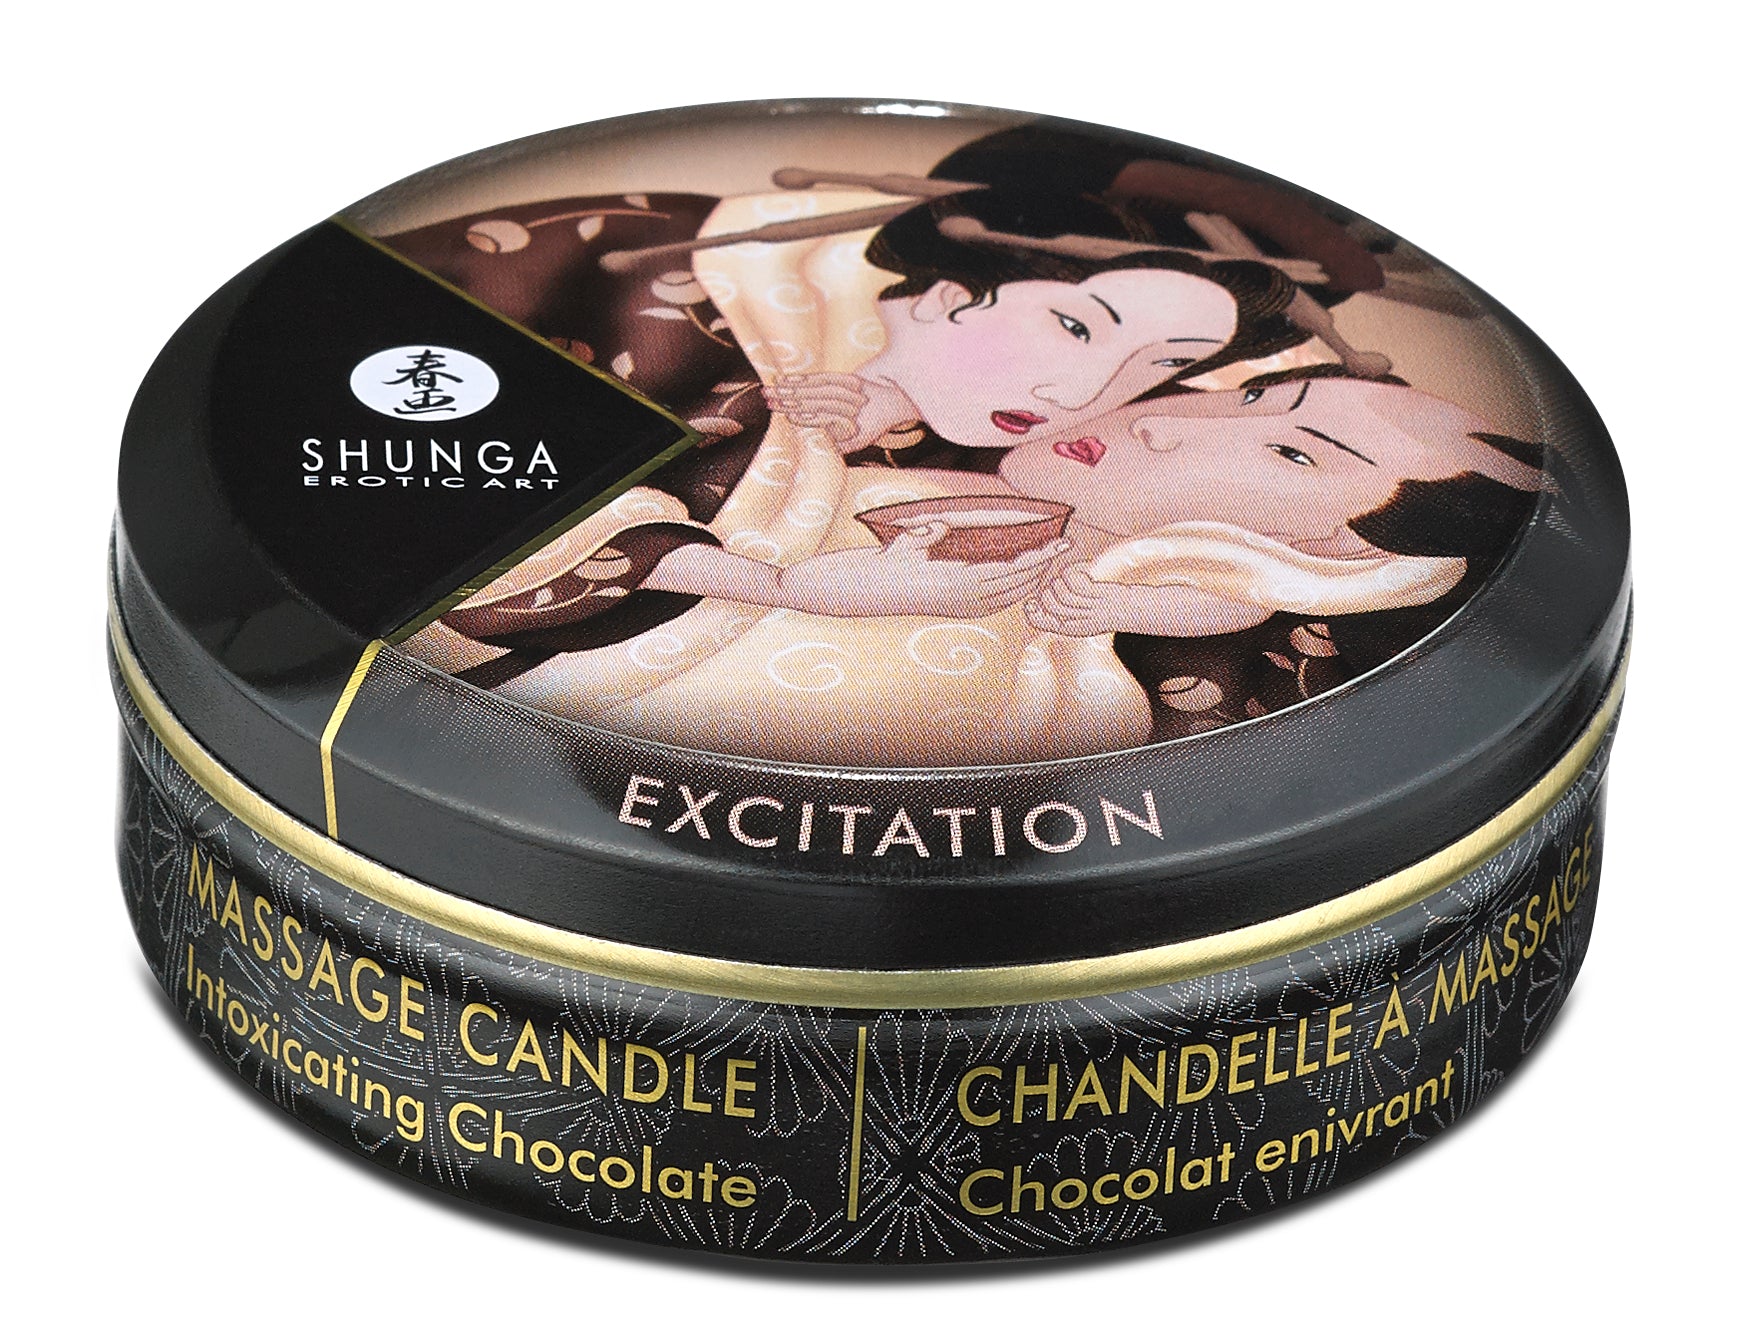 Mini Massage Candle - Excitation - Intoxicating  Chocolate - 1 Fl. Oz. SHU4609